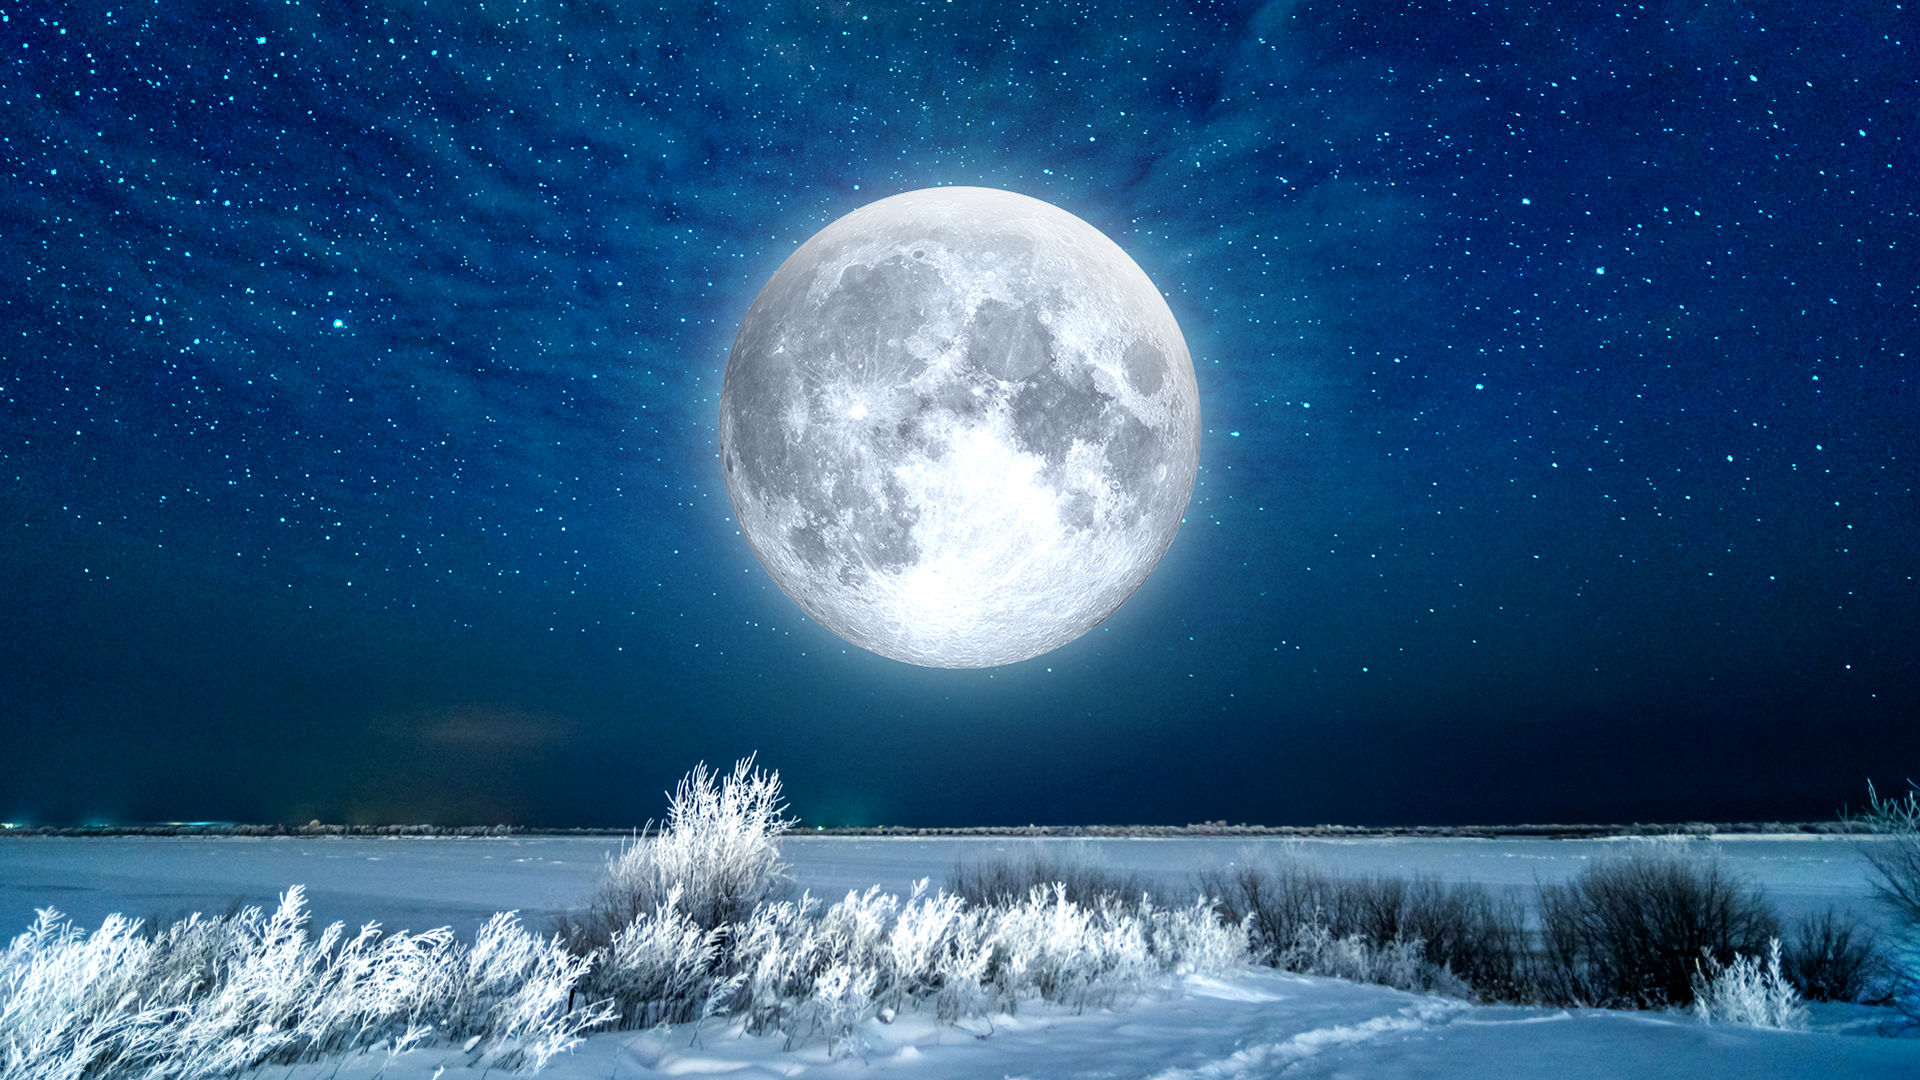 Luna Llena de Nieve 2020: ¿Superluna?